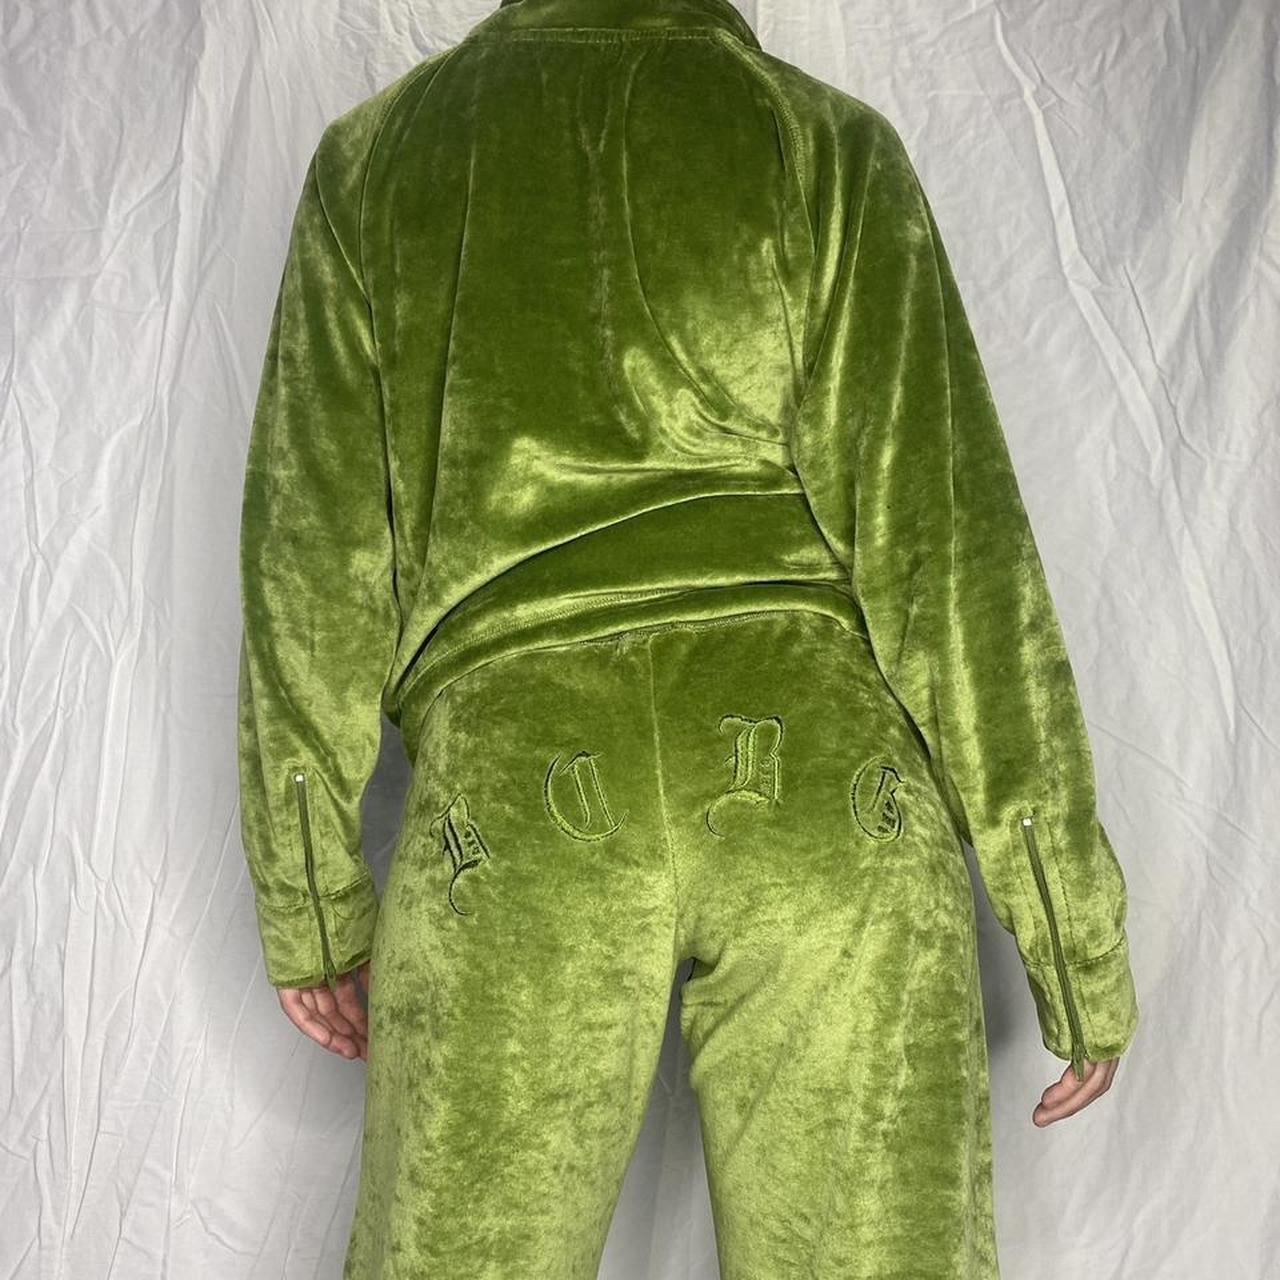 Army green velour lounge pants 💚 Very y2k! - Depop